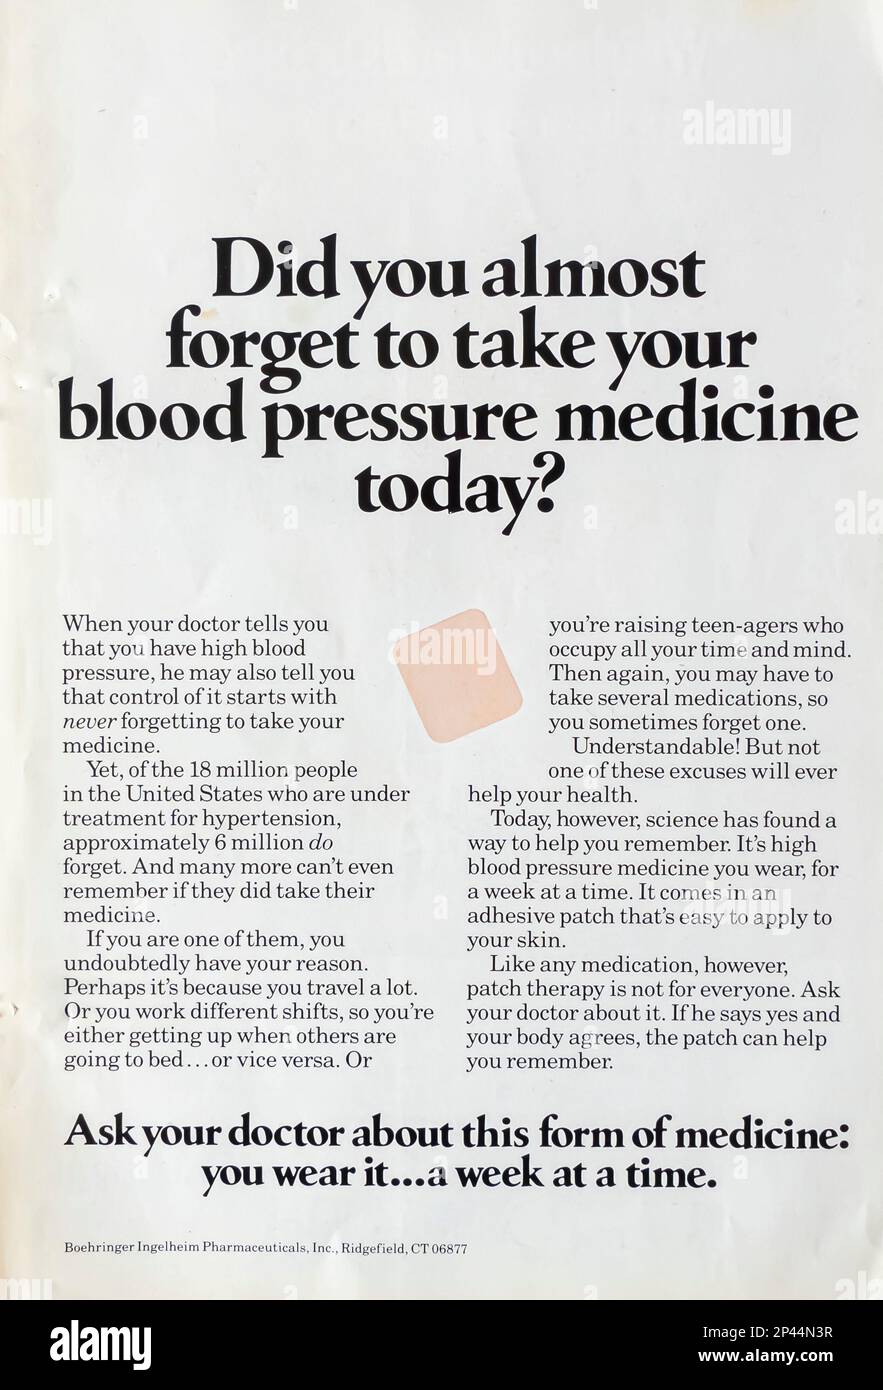 Boehringer Ingelheim pubblicità della società farmaceutica in una rivista NatGeo Febbraio 1988 Foto Stock